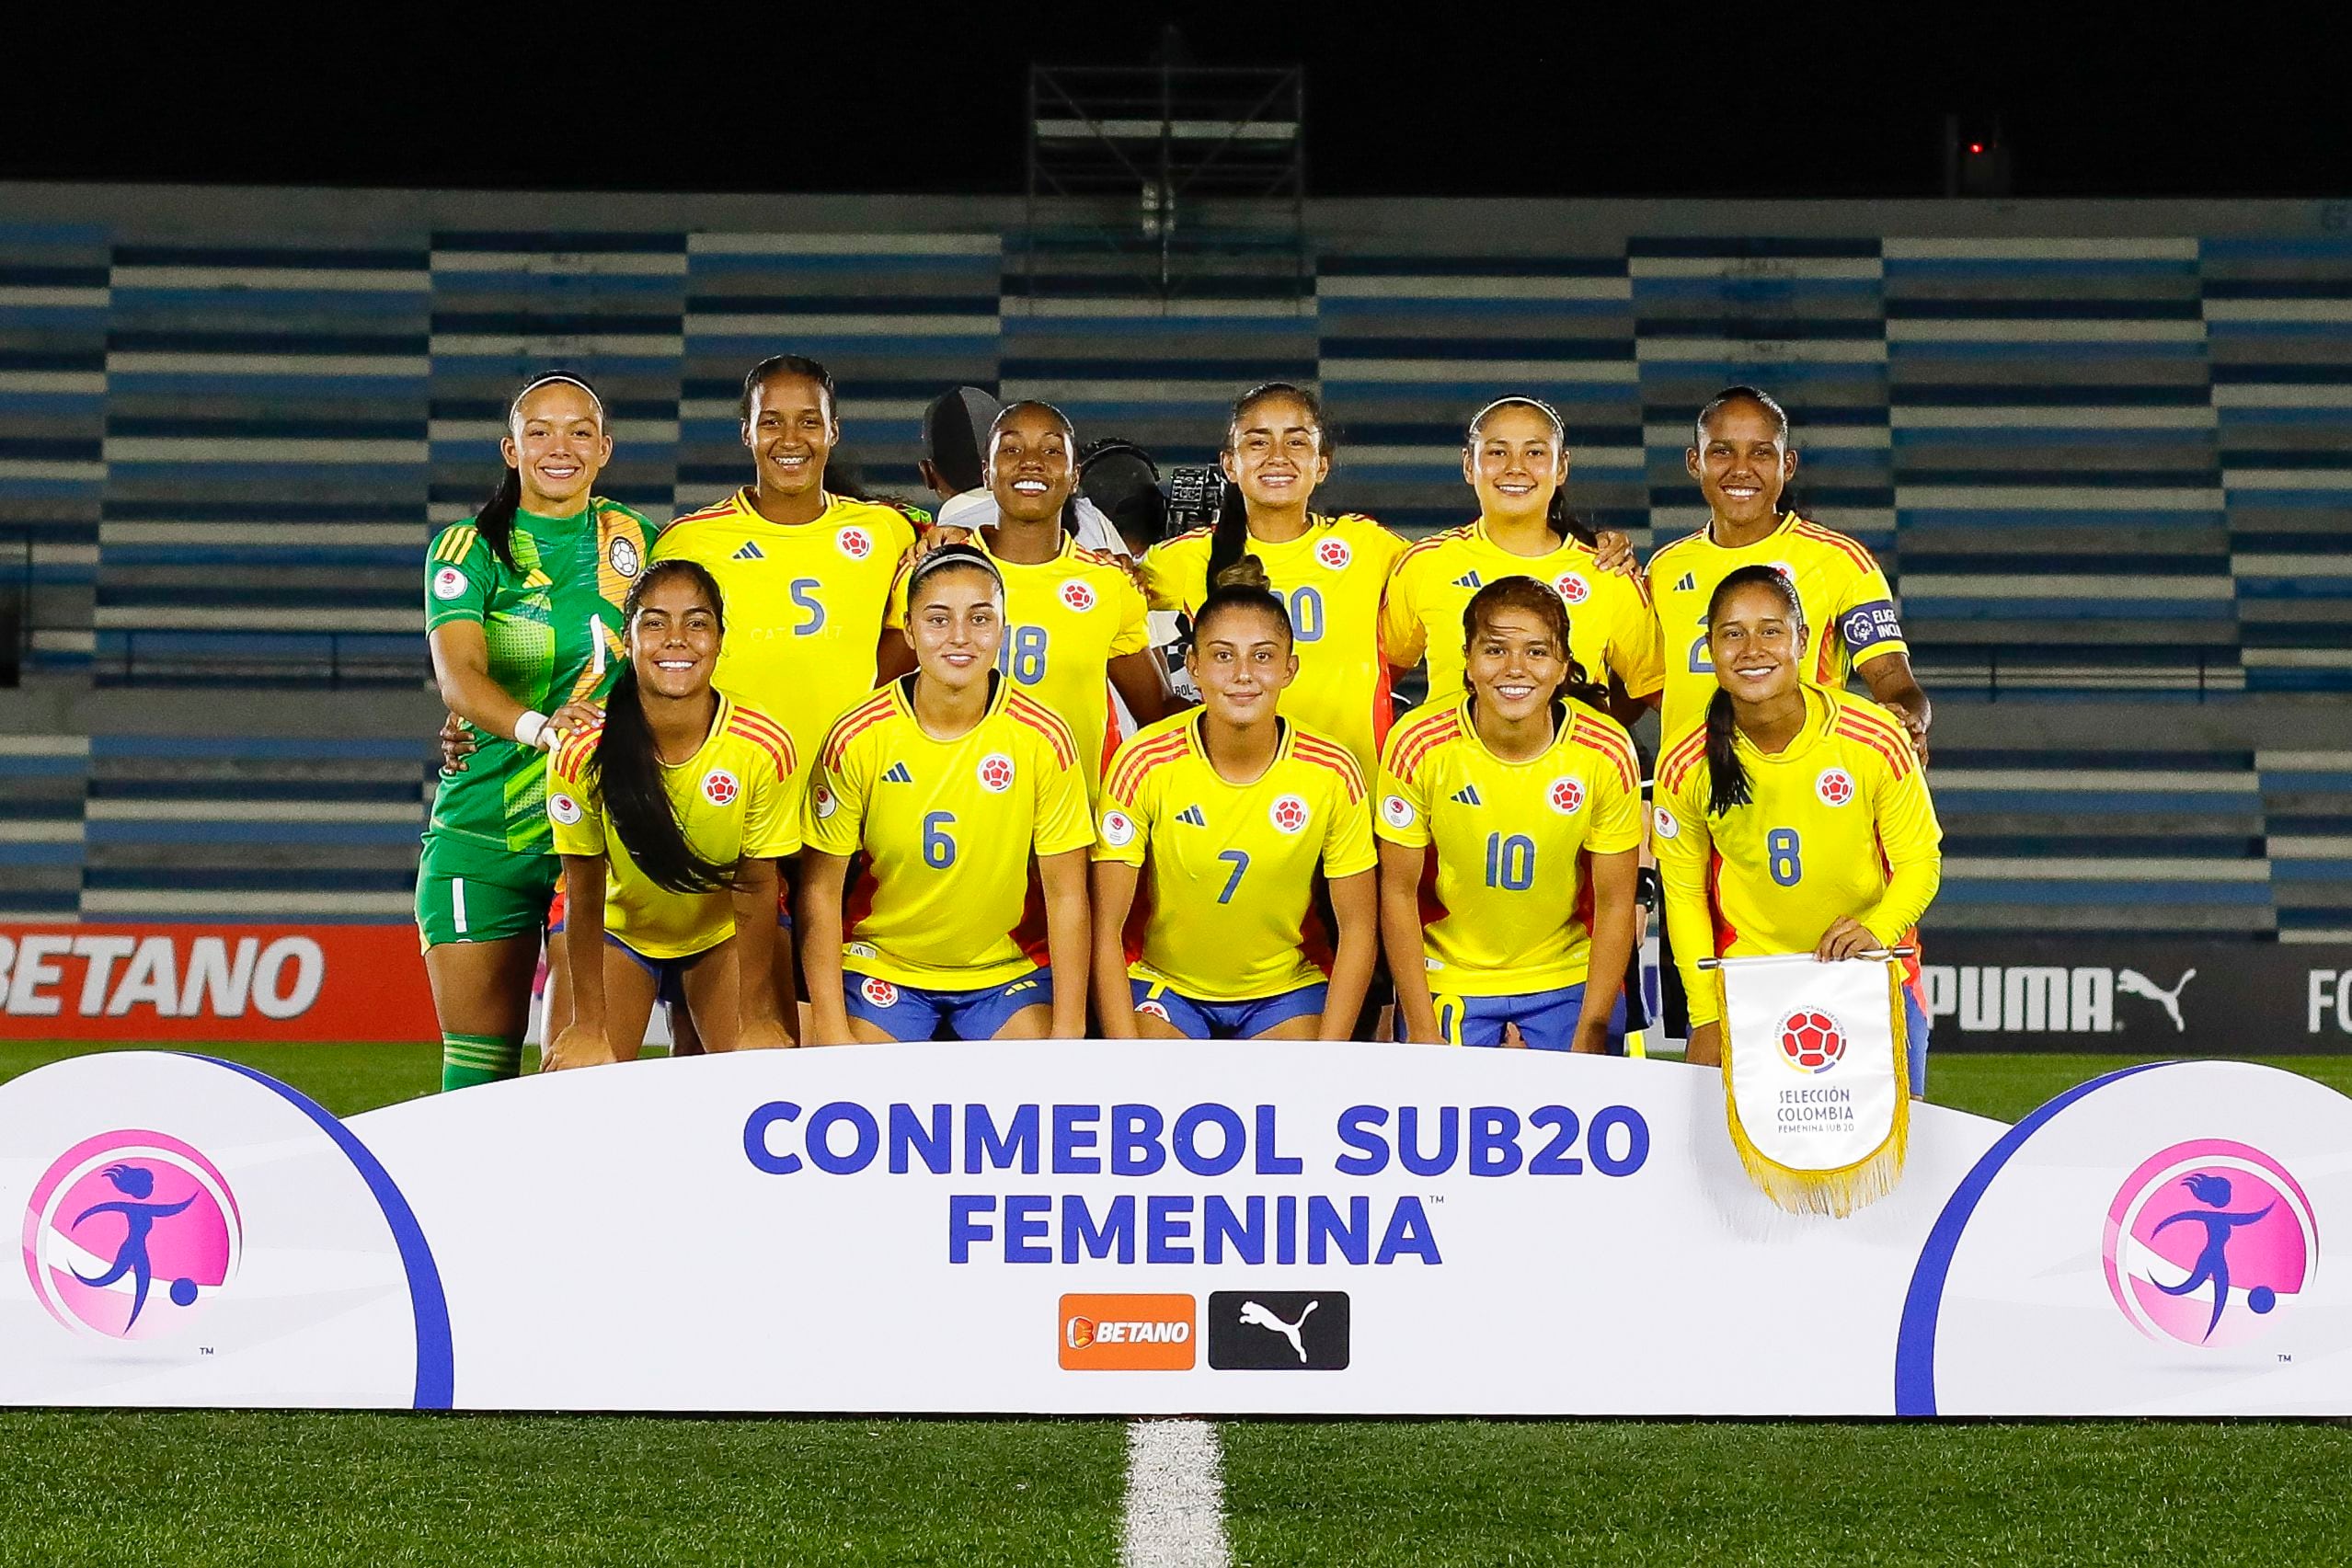 El equipo sub-20 se prepara para disputar la Copa Mundial Femenina sub-20 de la FIFA en Bogotá, Cali y Medellín - crédito Conmebol